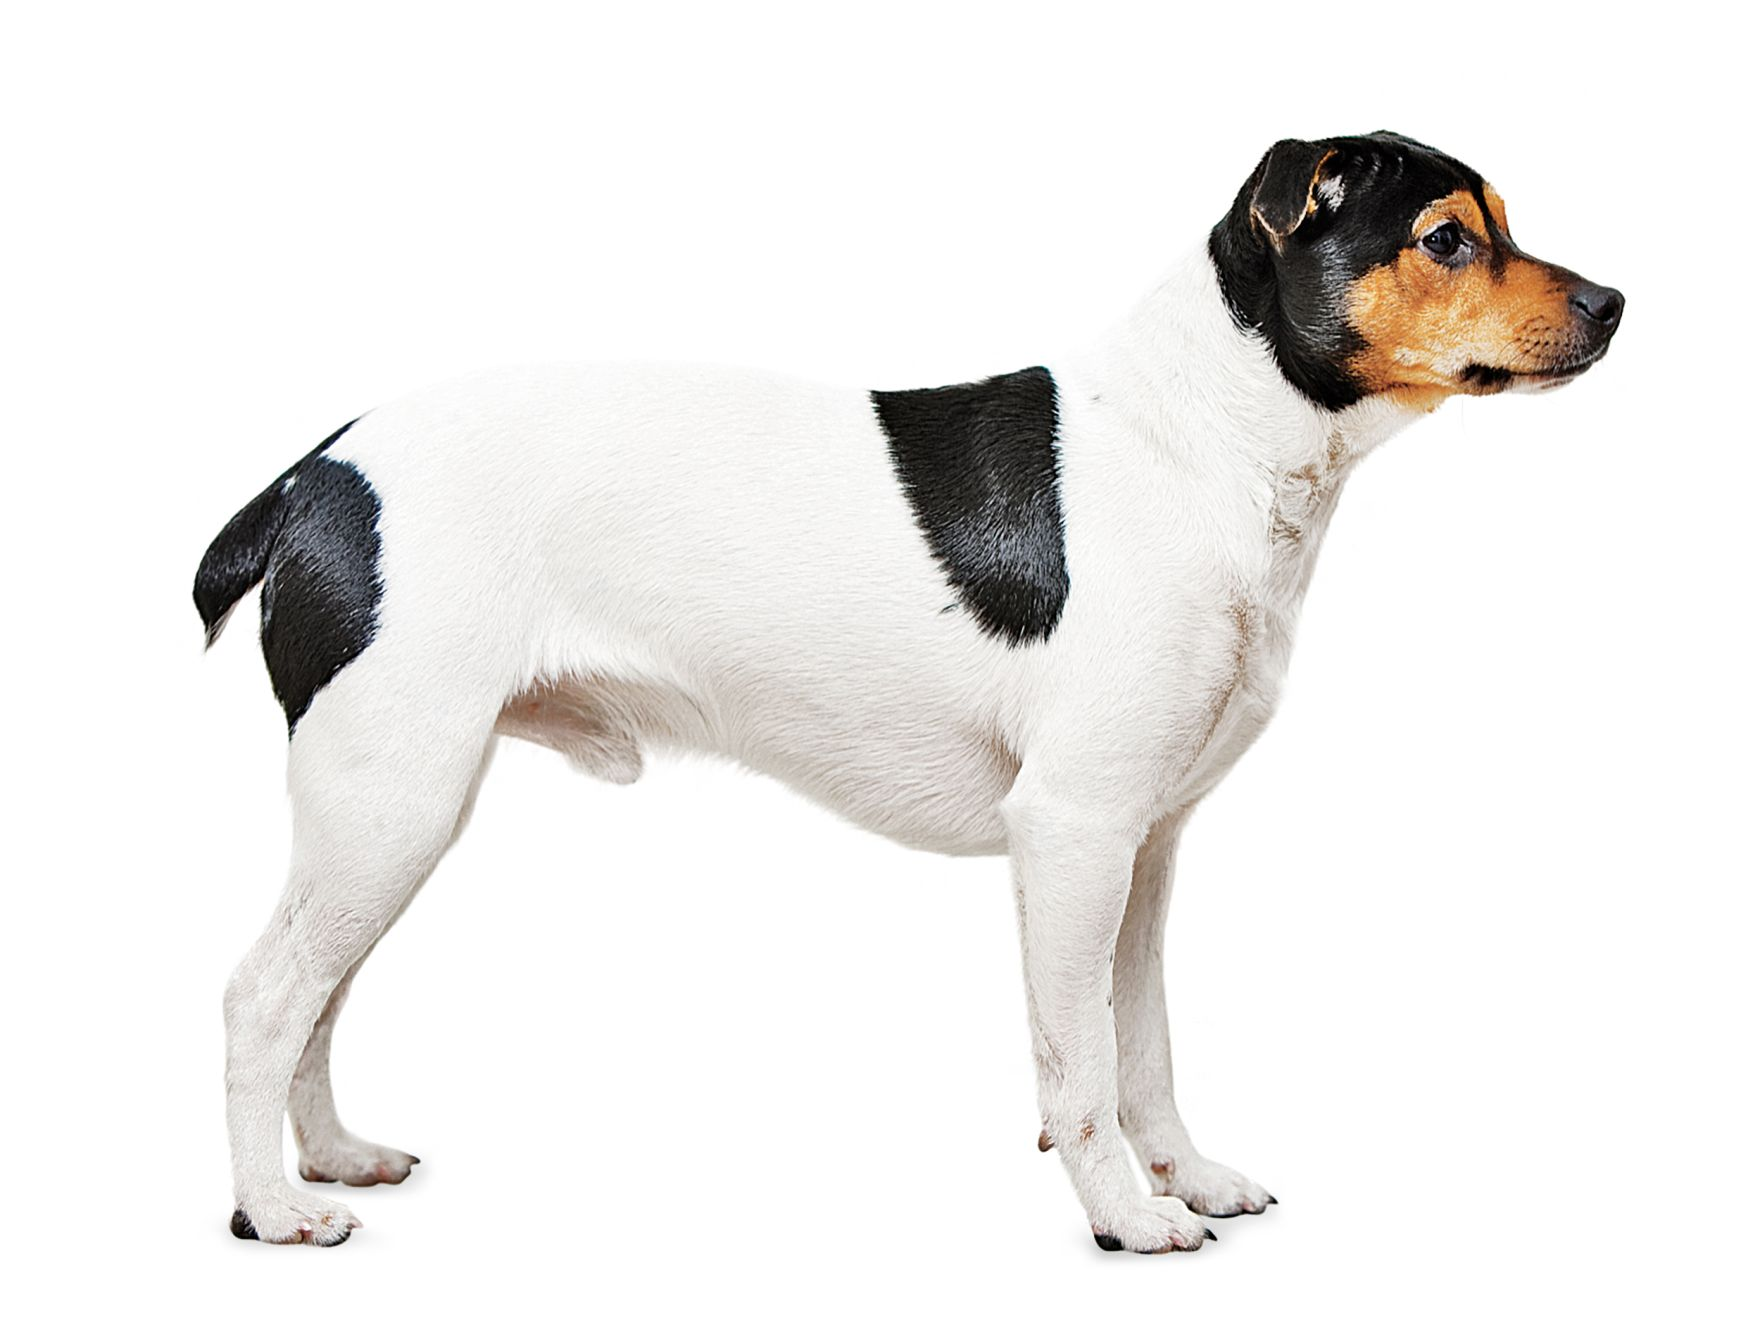 Danish-swedish farmdog